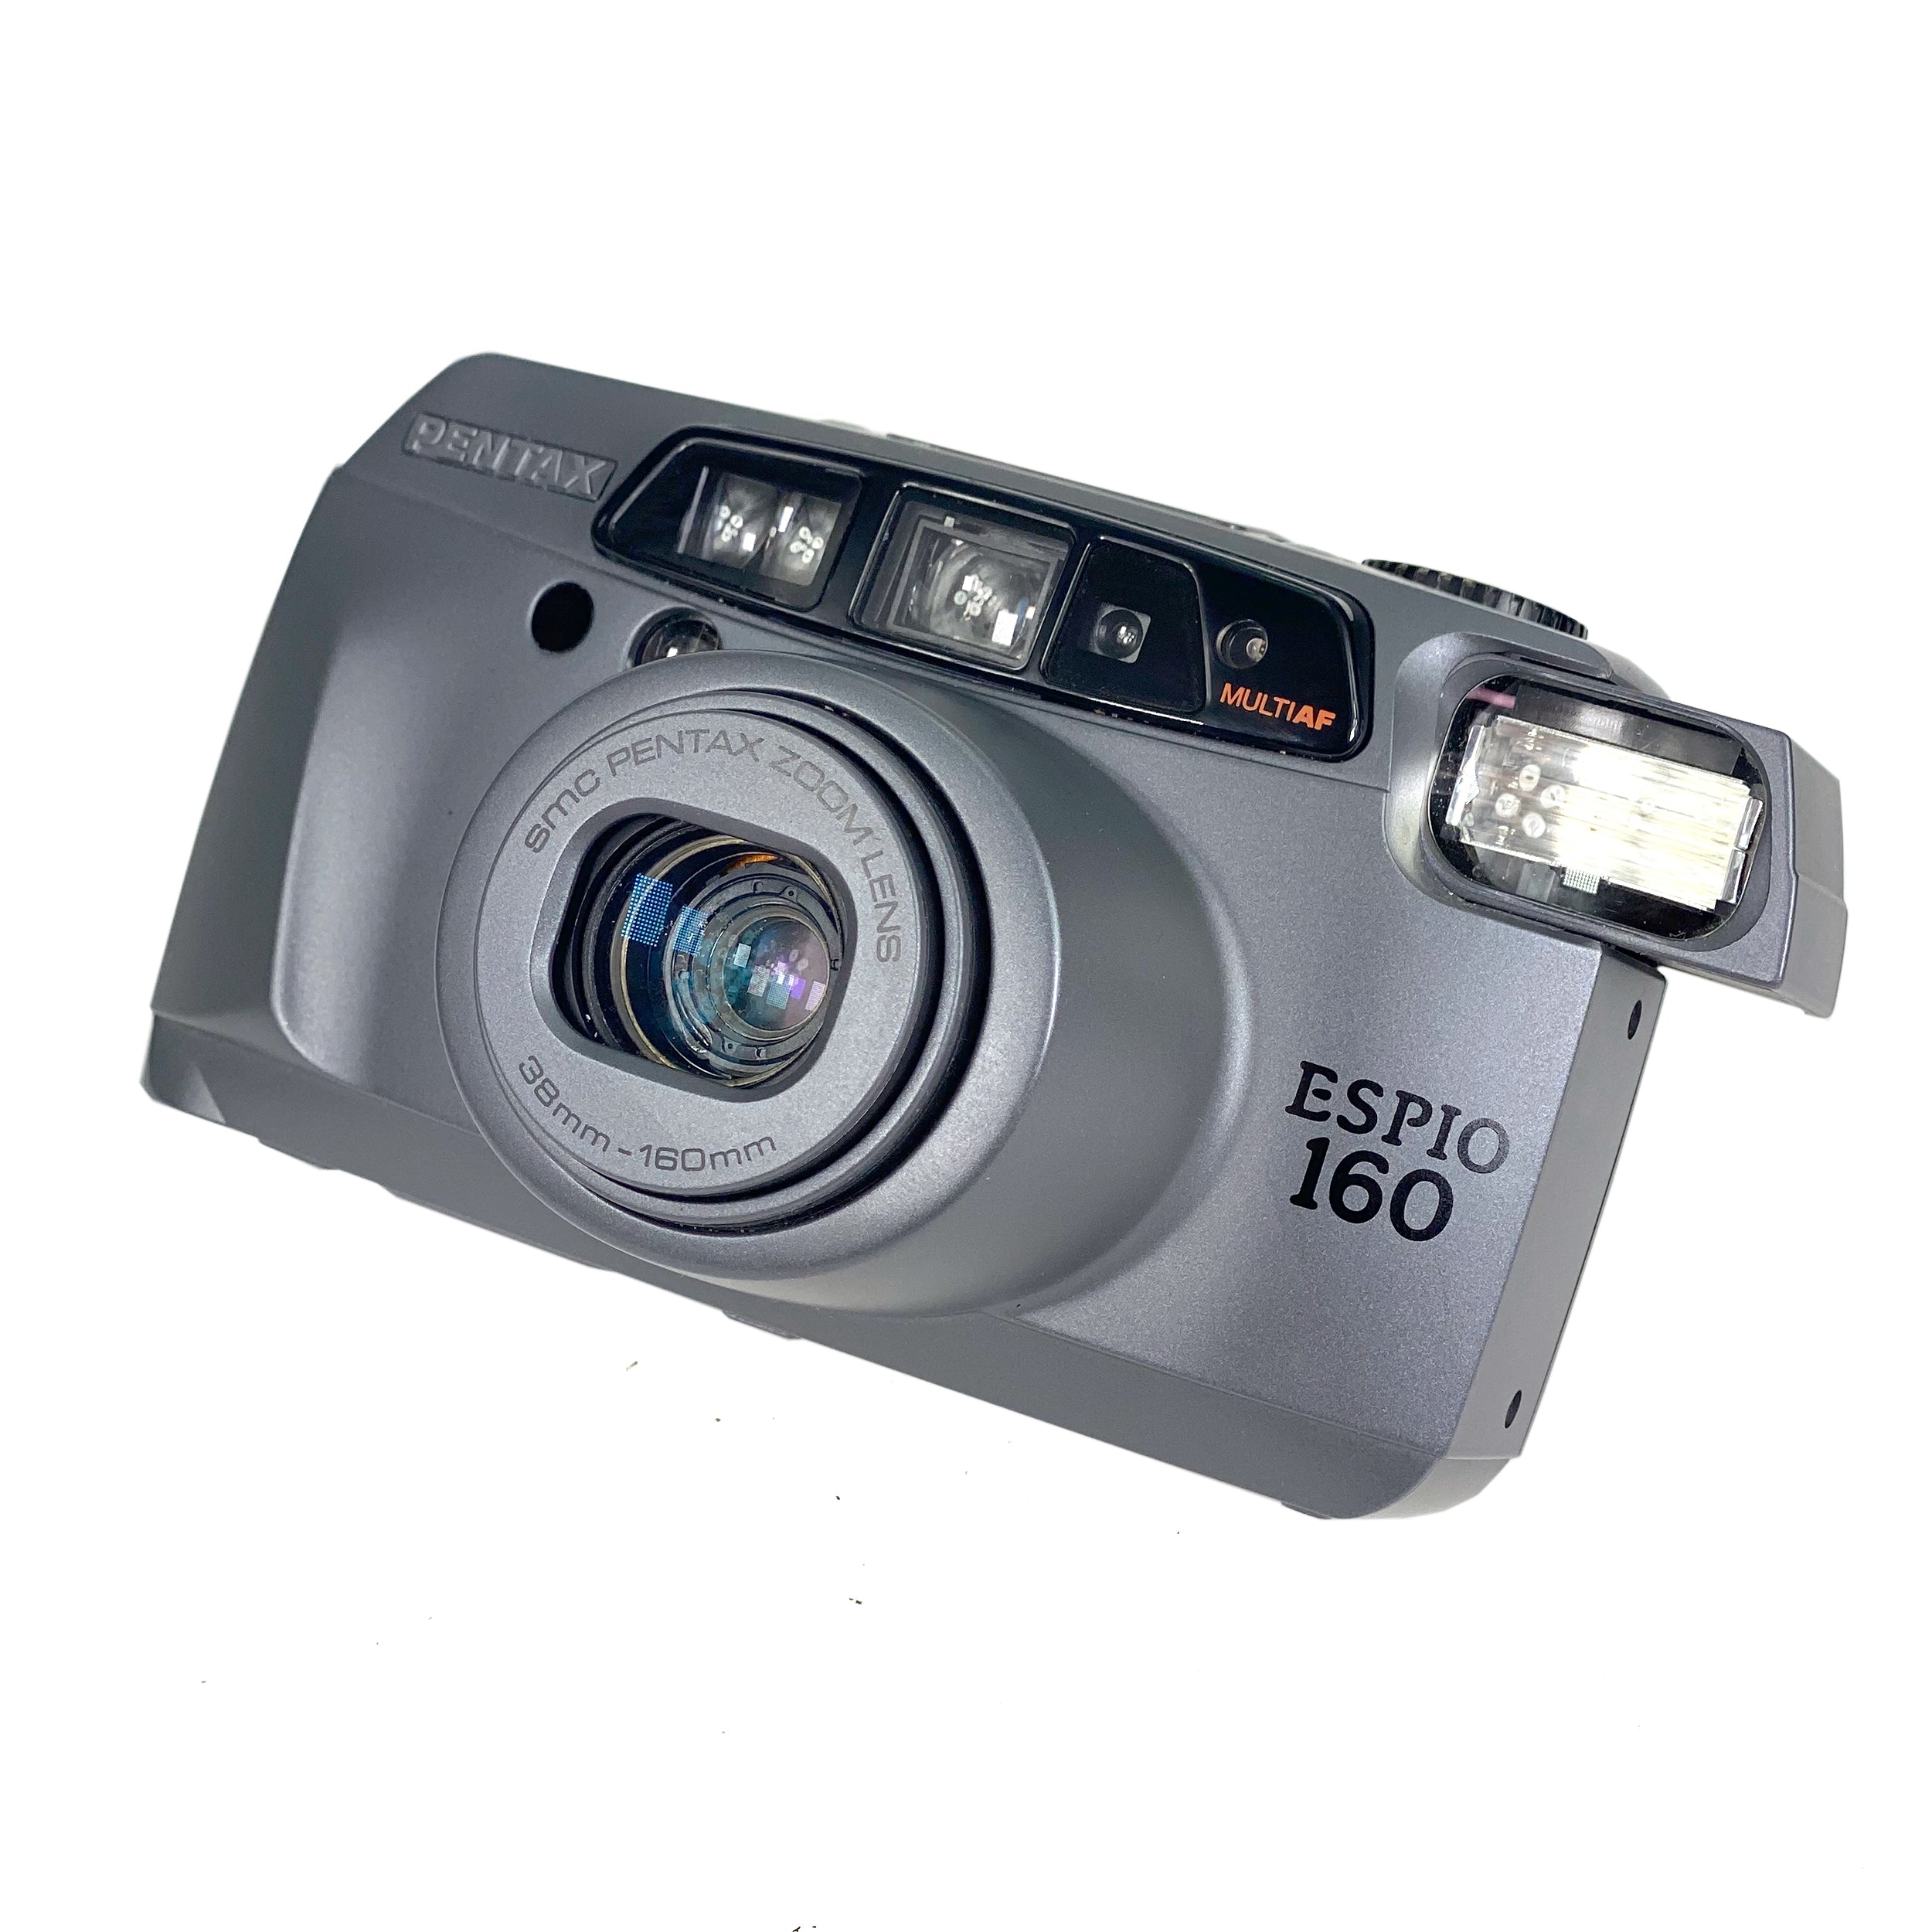 Pentax Espio 160 – Retro Camera Shop